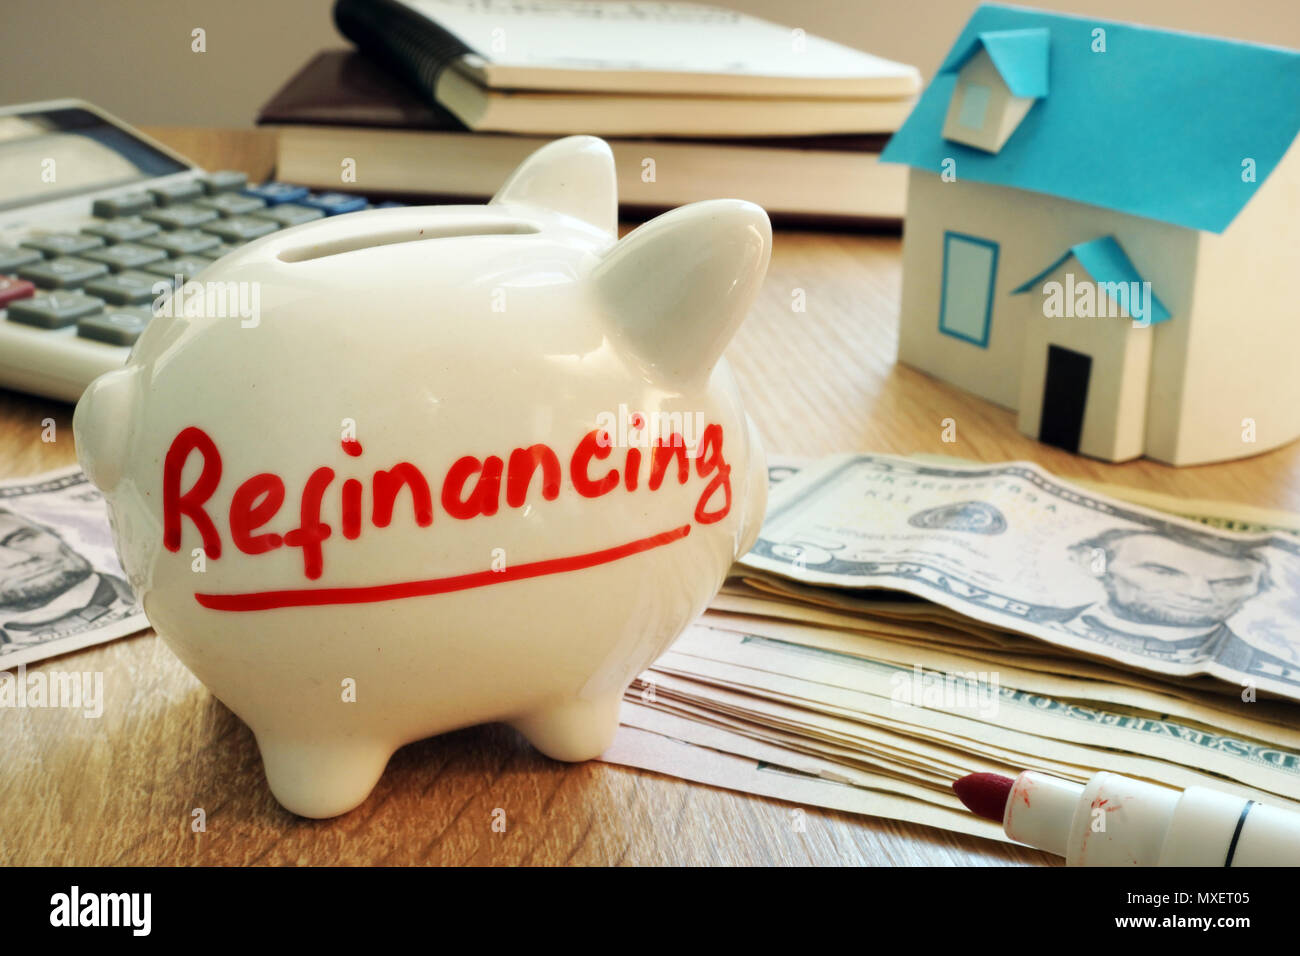 Refinancing written on a piggy bank. Stock Photo